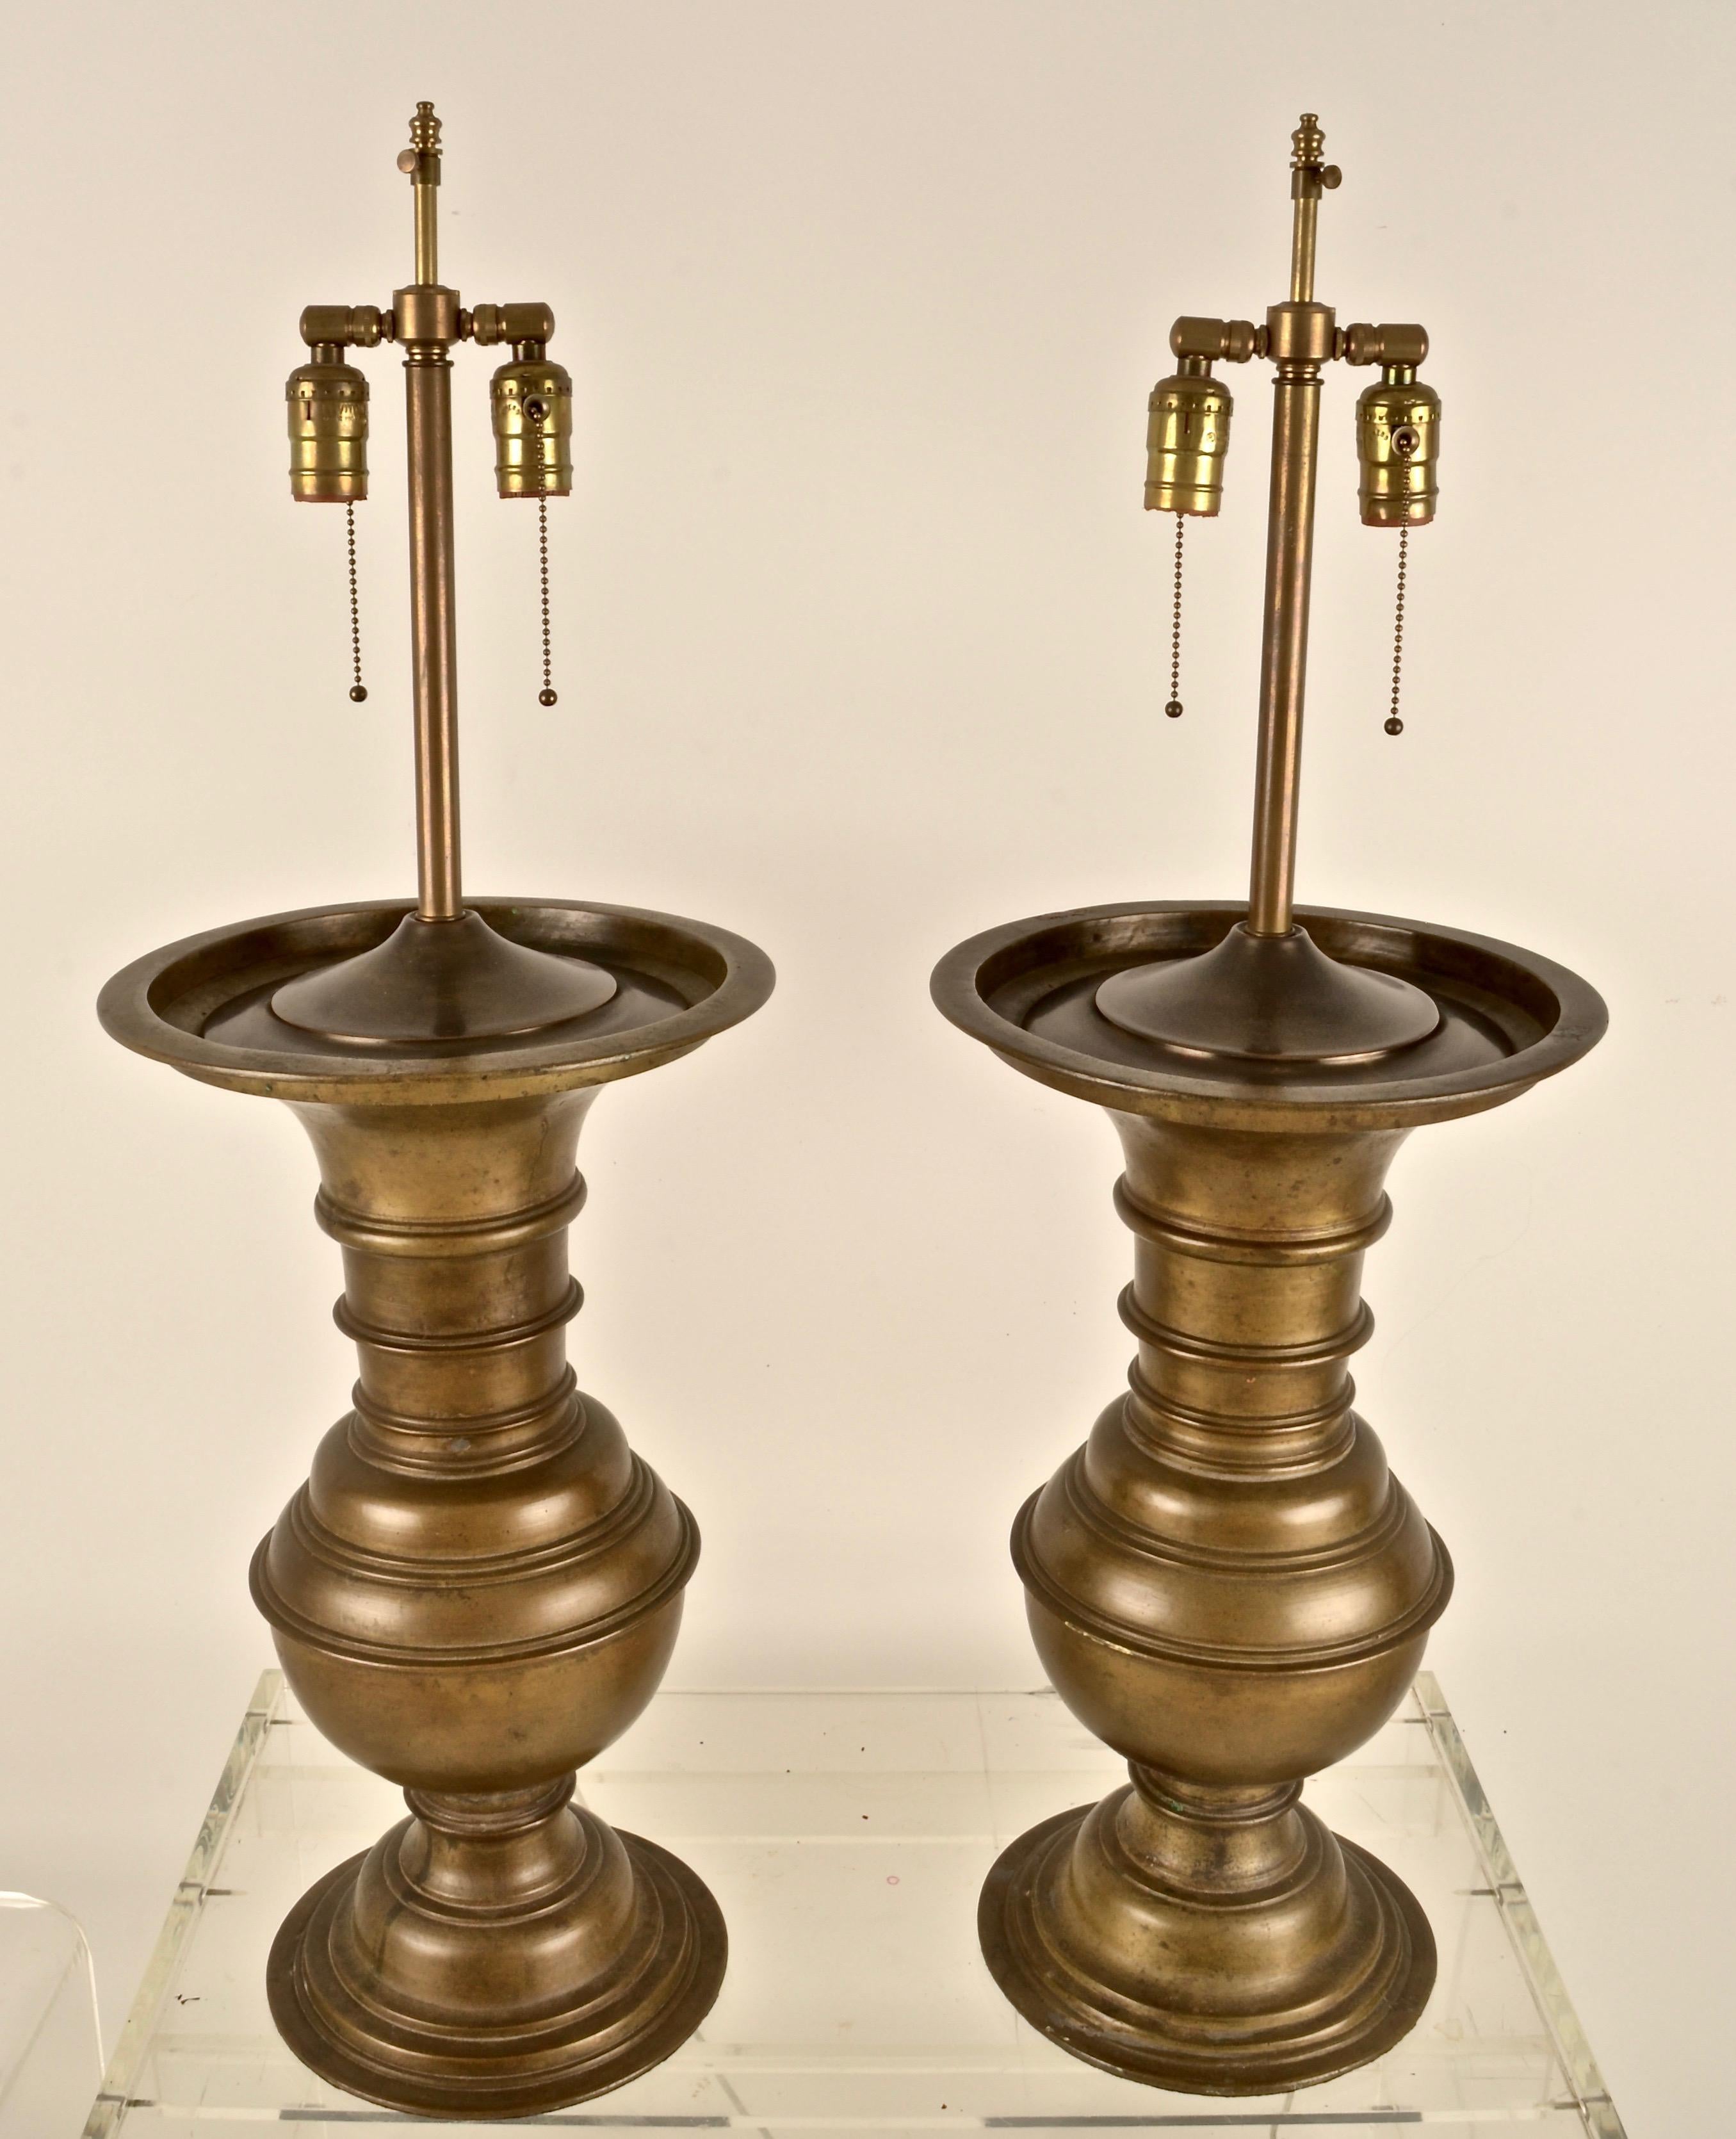 Ces lampes sont lourdes et substantielles, le bronze coulé a une belle patine d'antiquité montrant une oxydation naturelle. La conversion de lampe de qualité comporte deux ampoules sur chaque lampe et une tige d'abat-jour réglable. Ombres à cordes